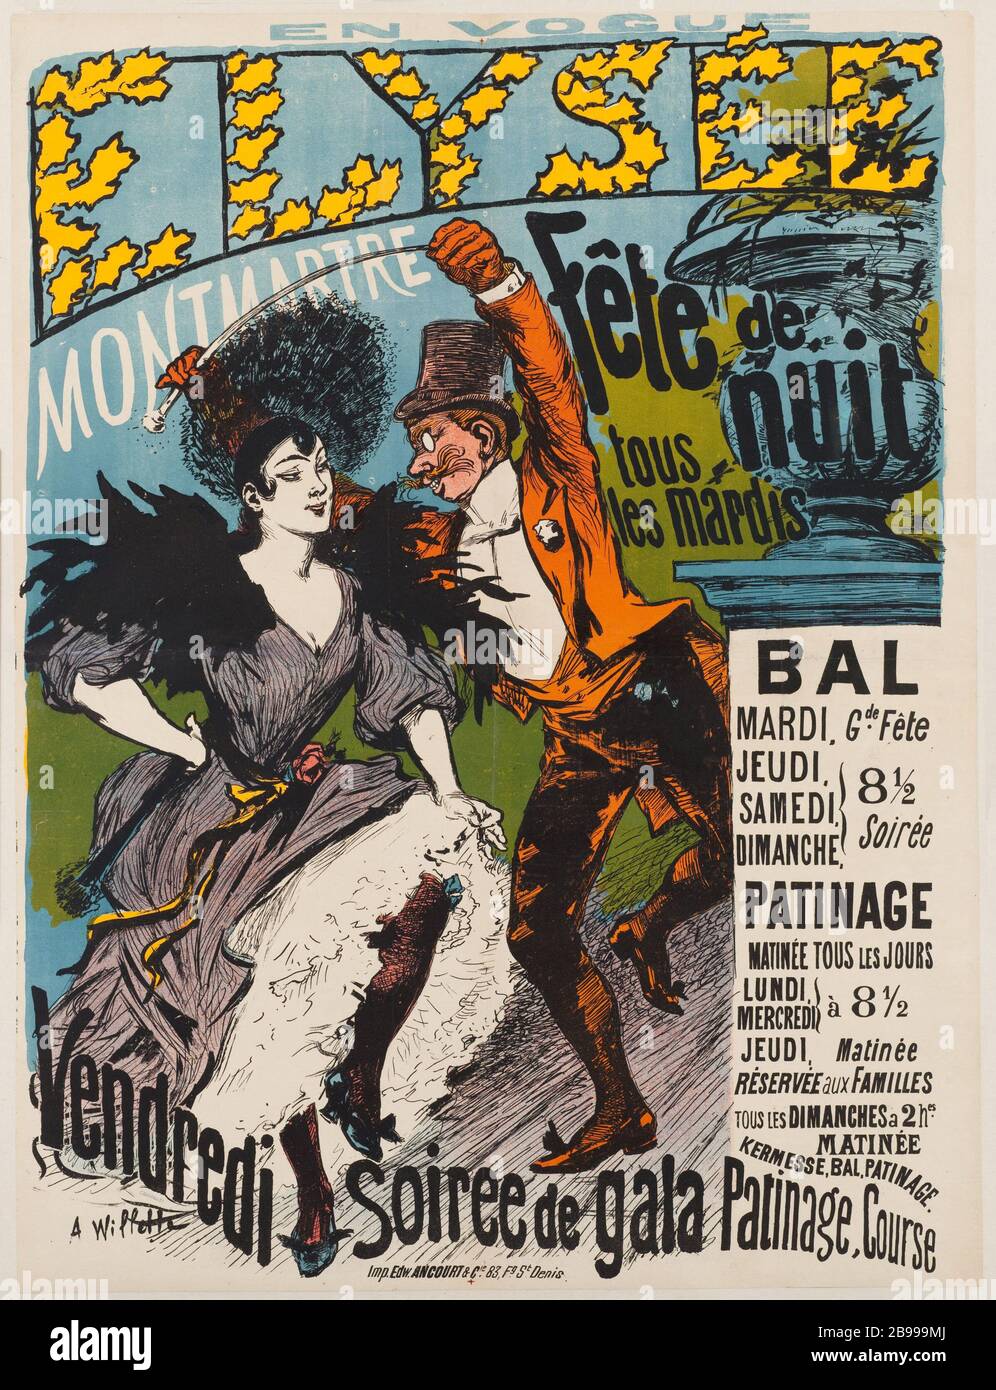 ELYSEE MONTMARTRE PARTY NIGHT Adolphe Willette (1857-1926). 'Elysée Montmartre, Fête de nuit'. Lithographie. 1880-1900. Paris, musée Carnavalet. Stock Photo